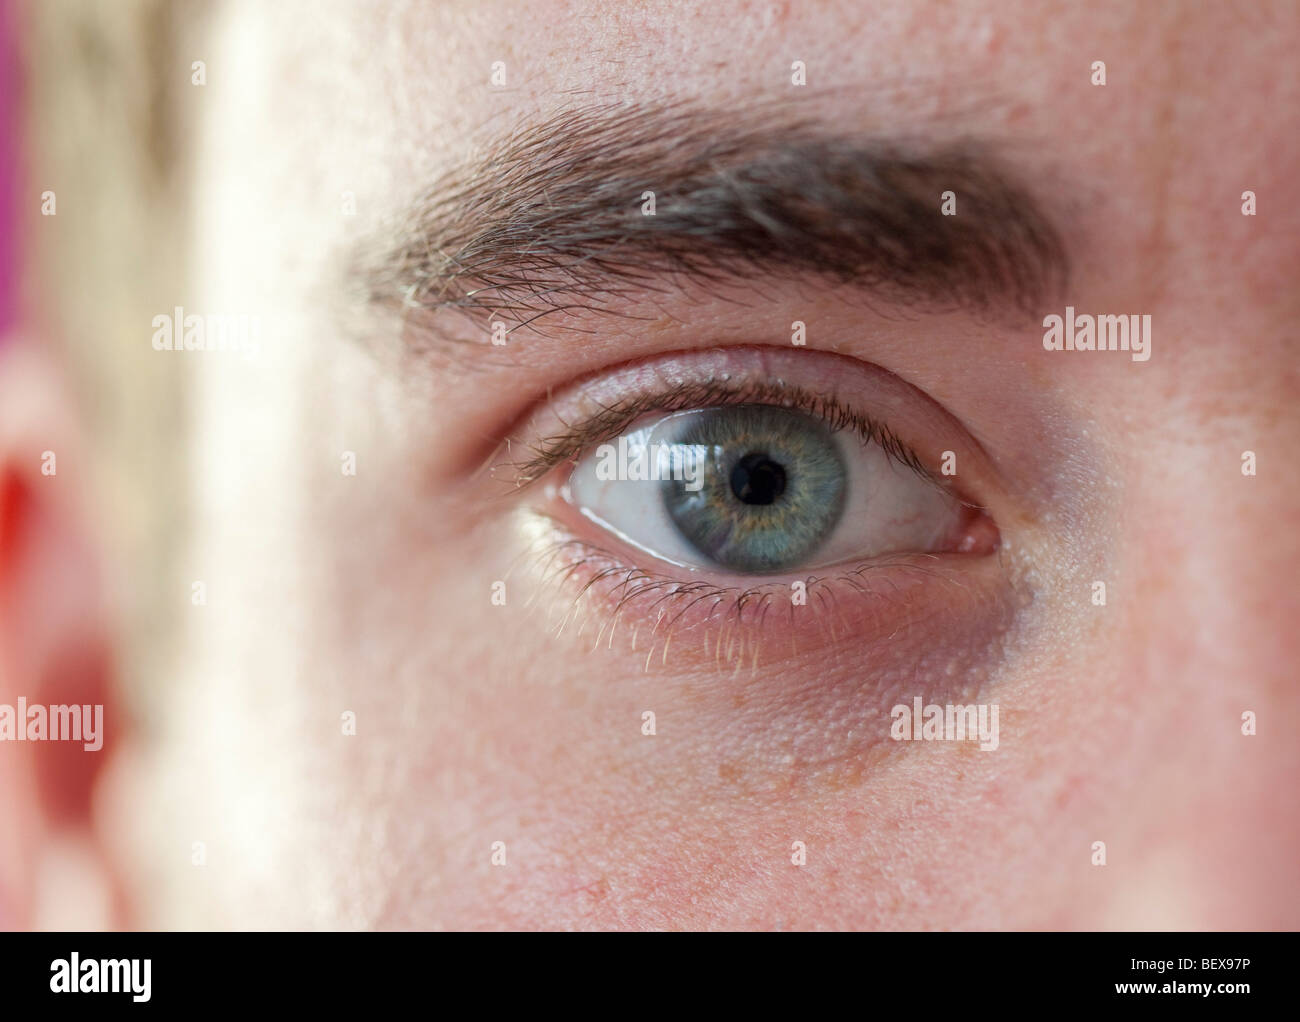 Human eye Stock Photo